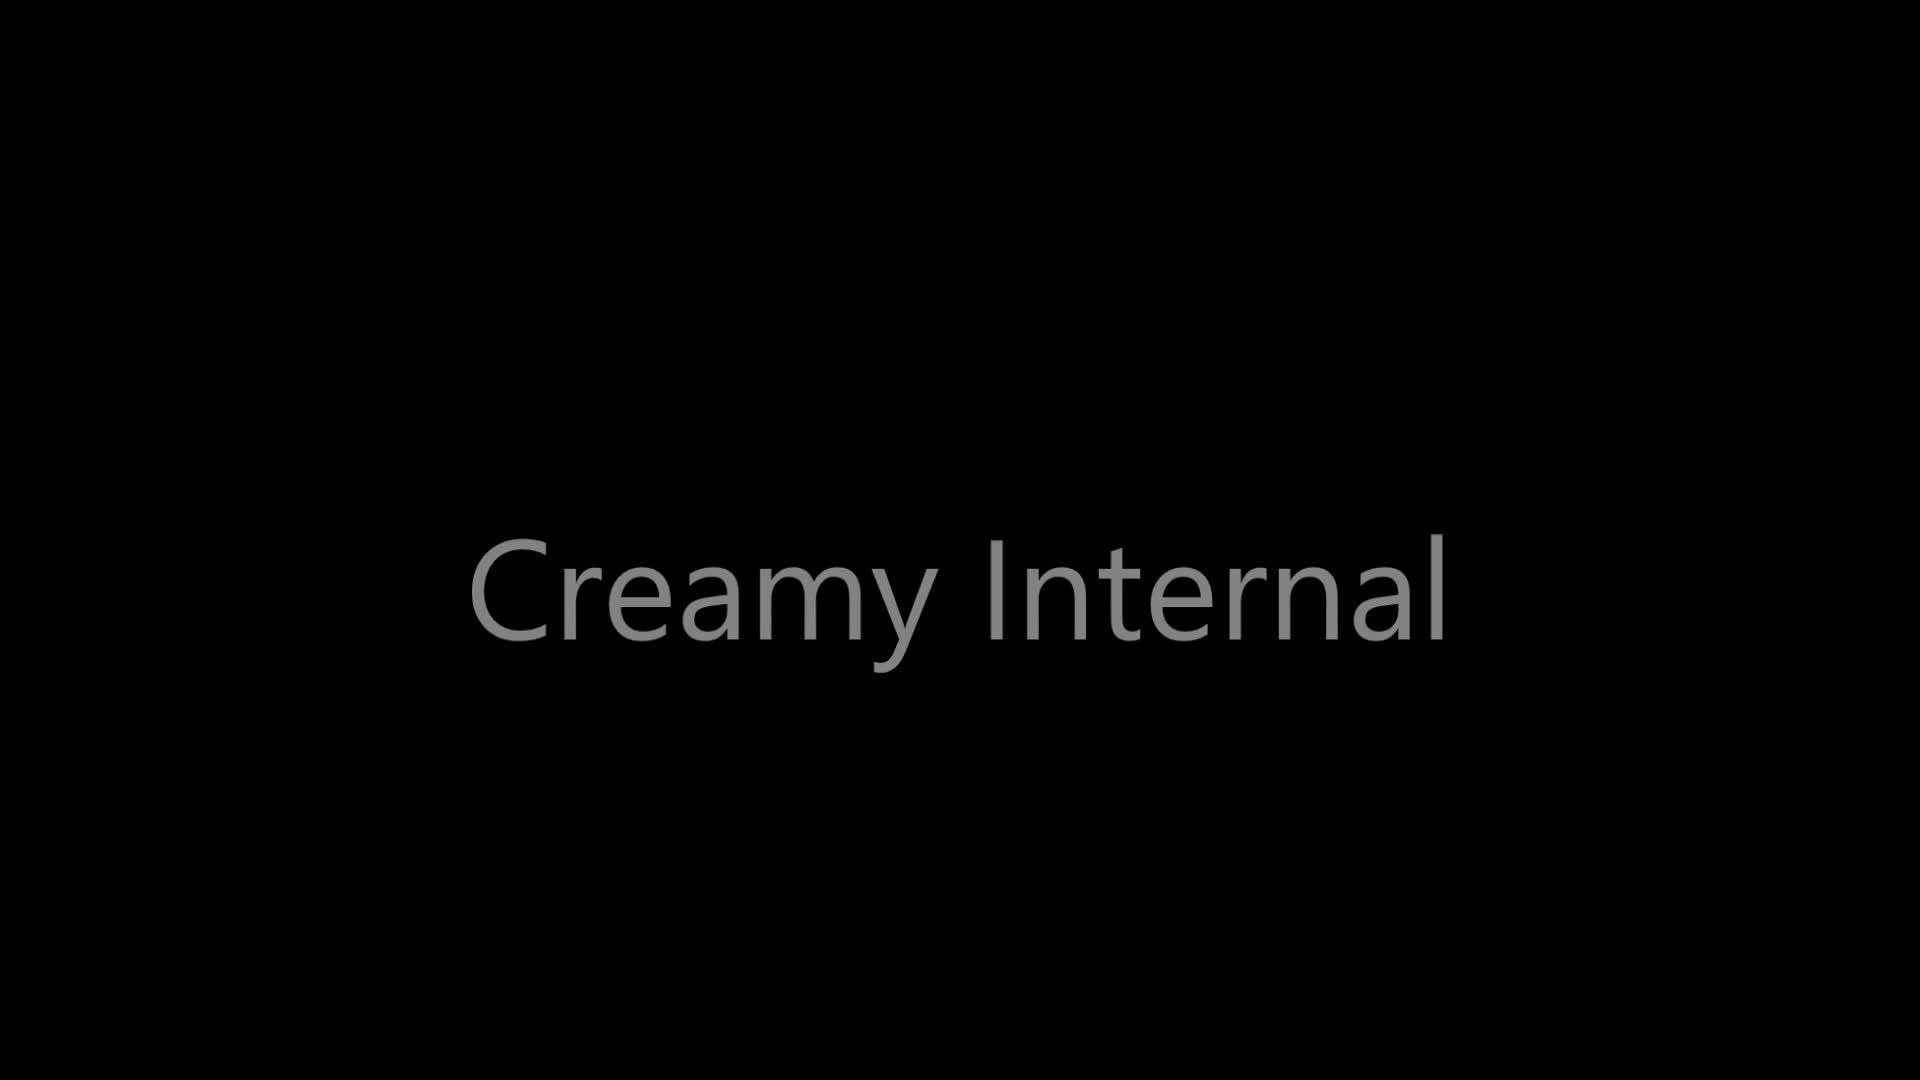 Creamy internal.... Cervix video